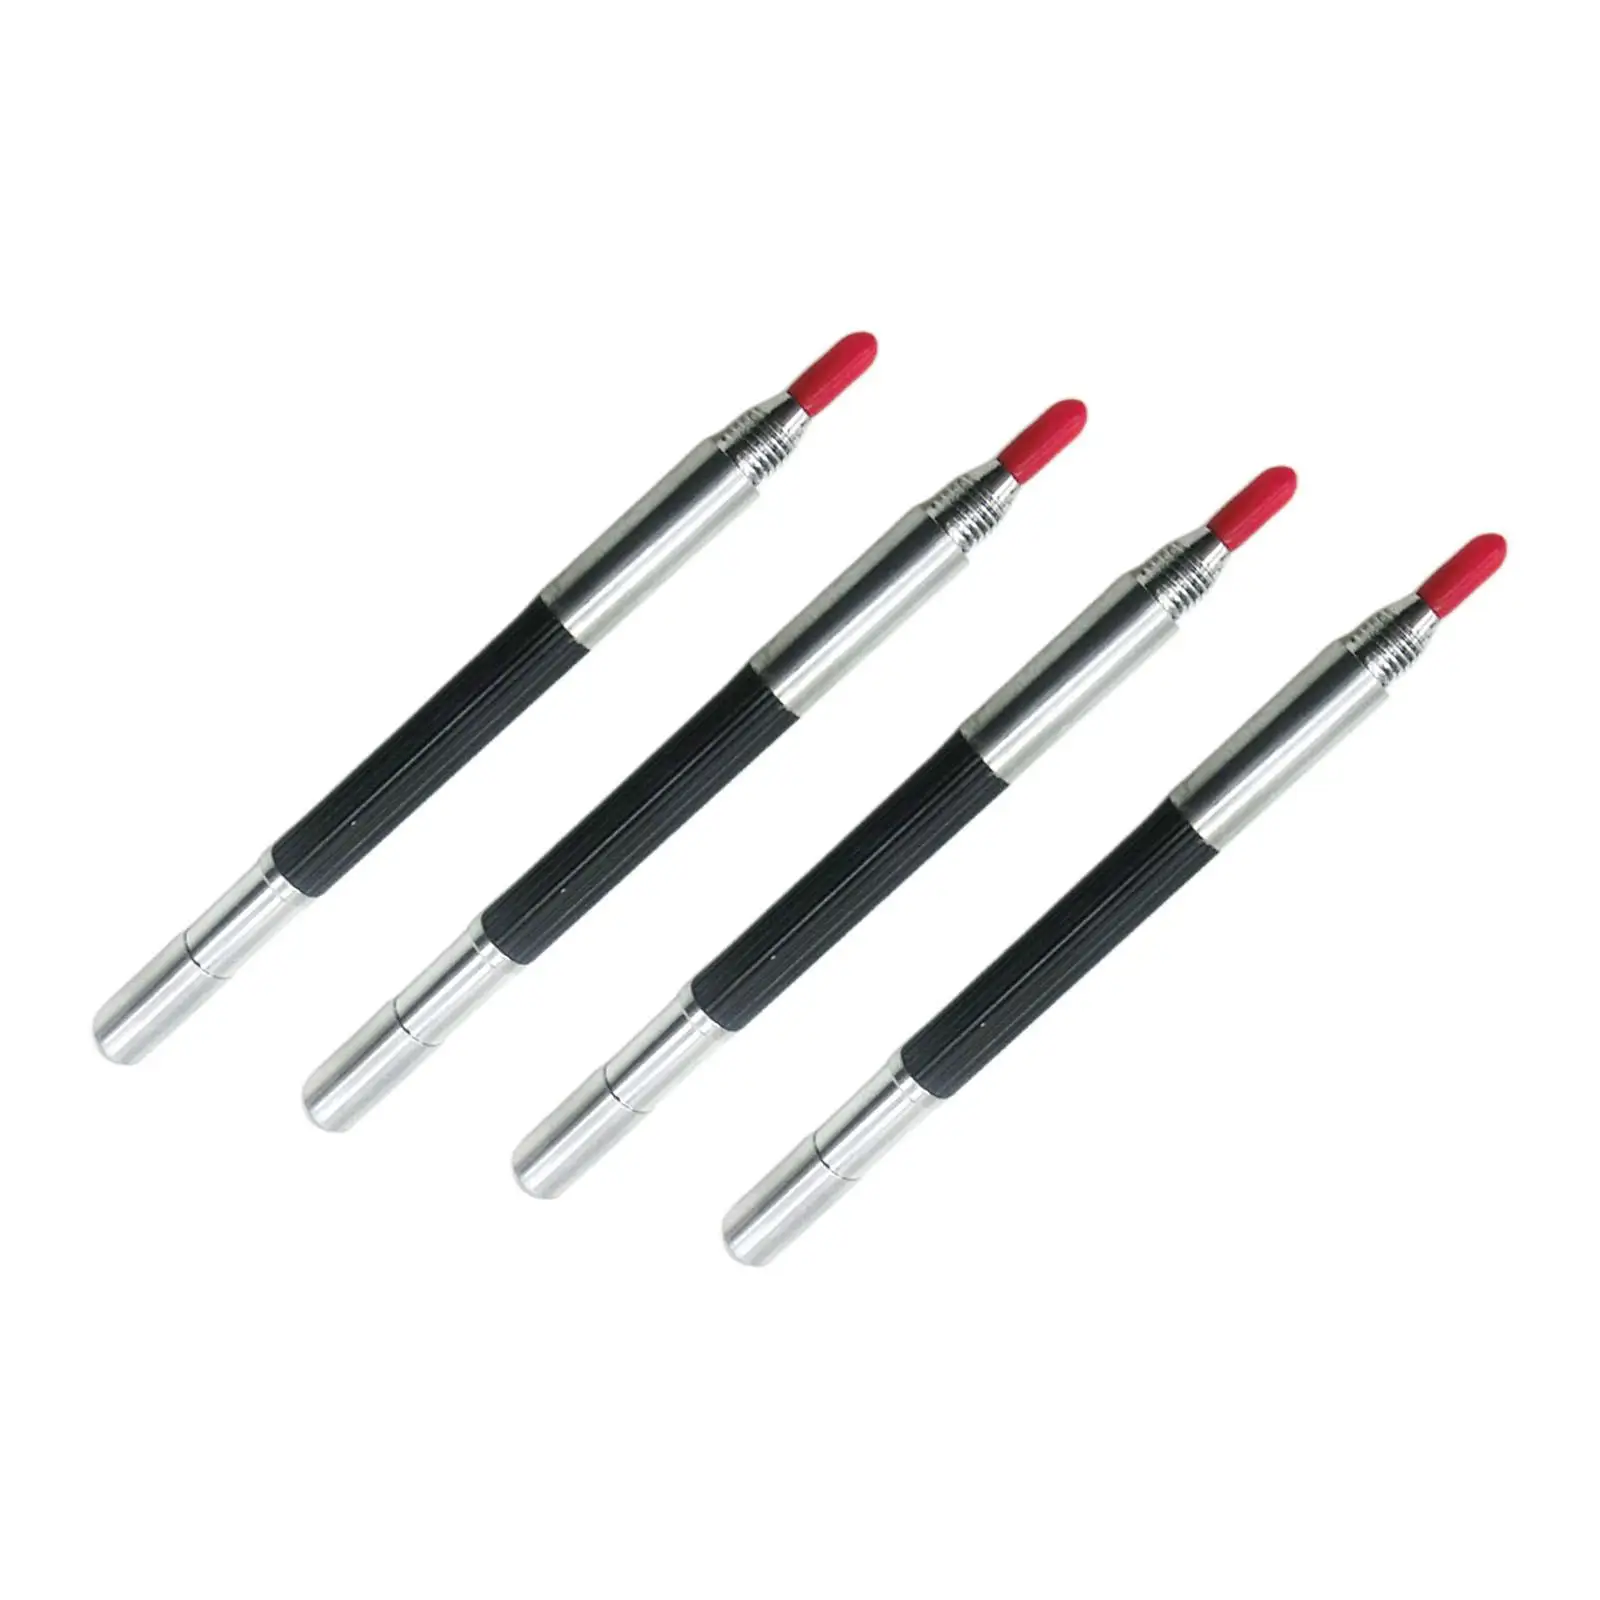 4x Engraving Marking Pen Durable Tungsten Carbide Tip Scriber Pens for